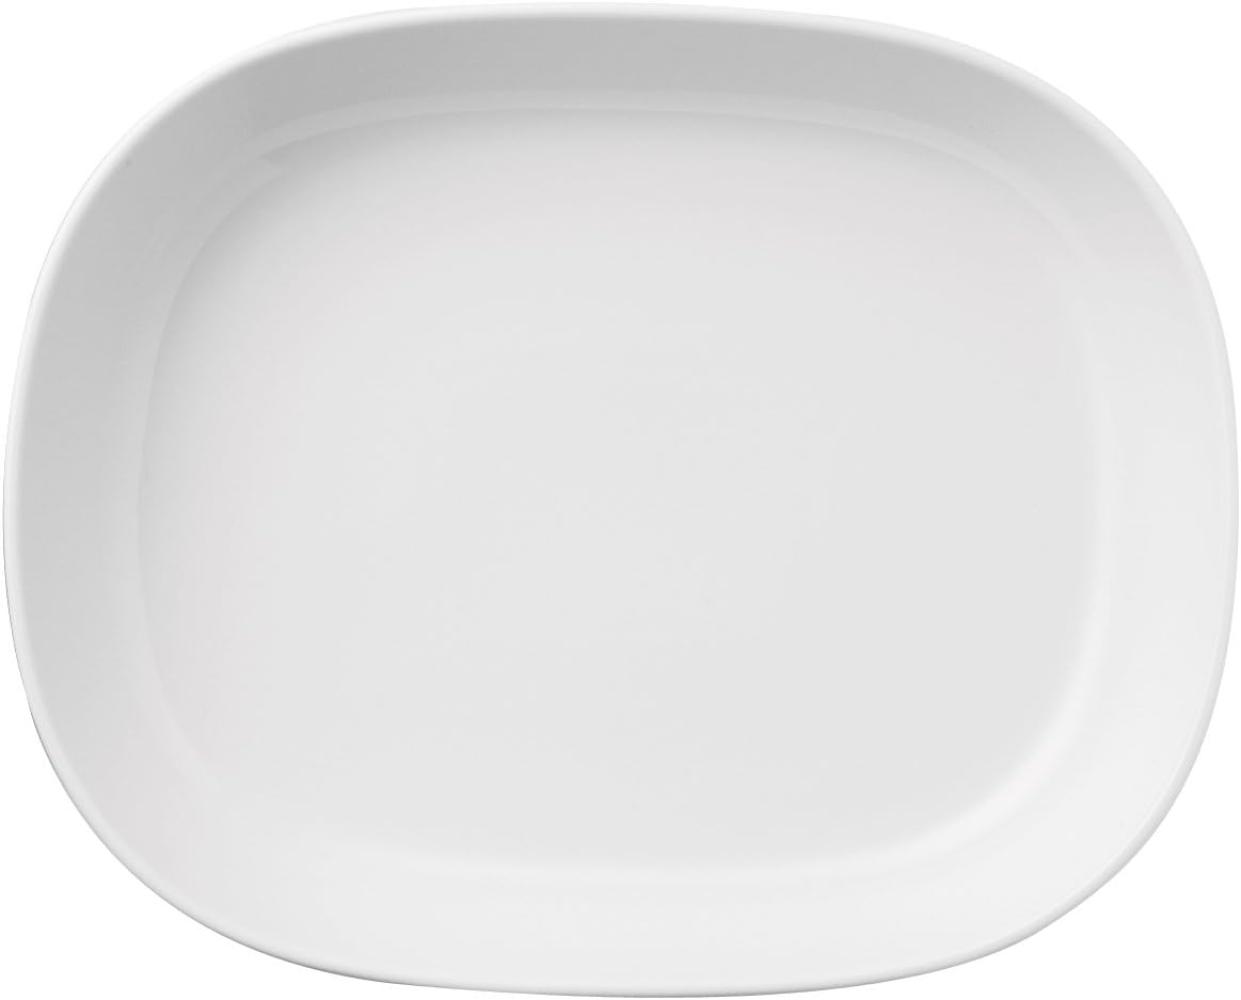 Thomas Trend Platte, Servierplatte, Beilagenplatte, Tief, Porzellan, Weiß, Spülmaschinenfest, 30 cm, 12530 Bild 1